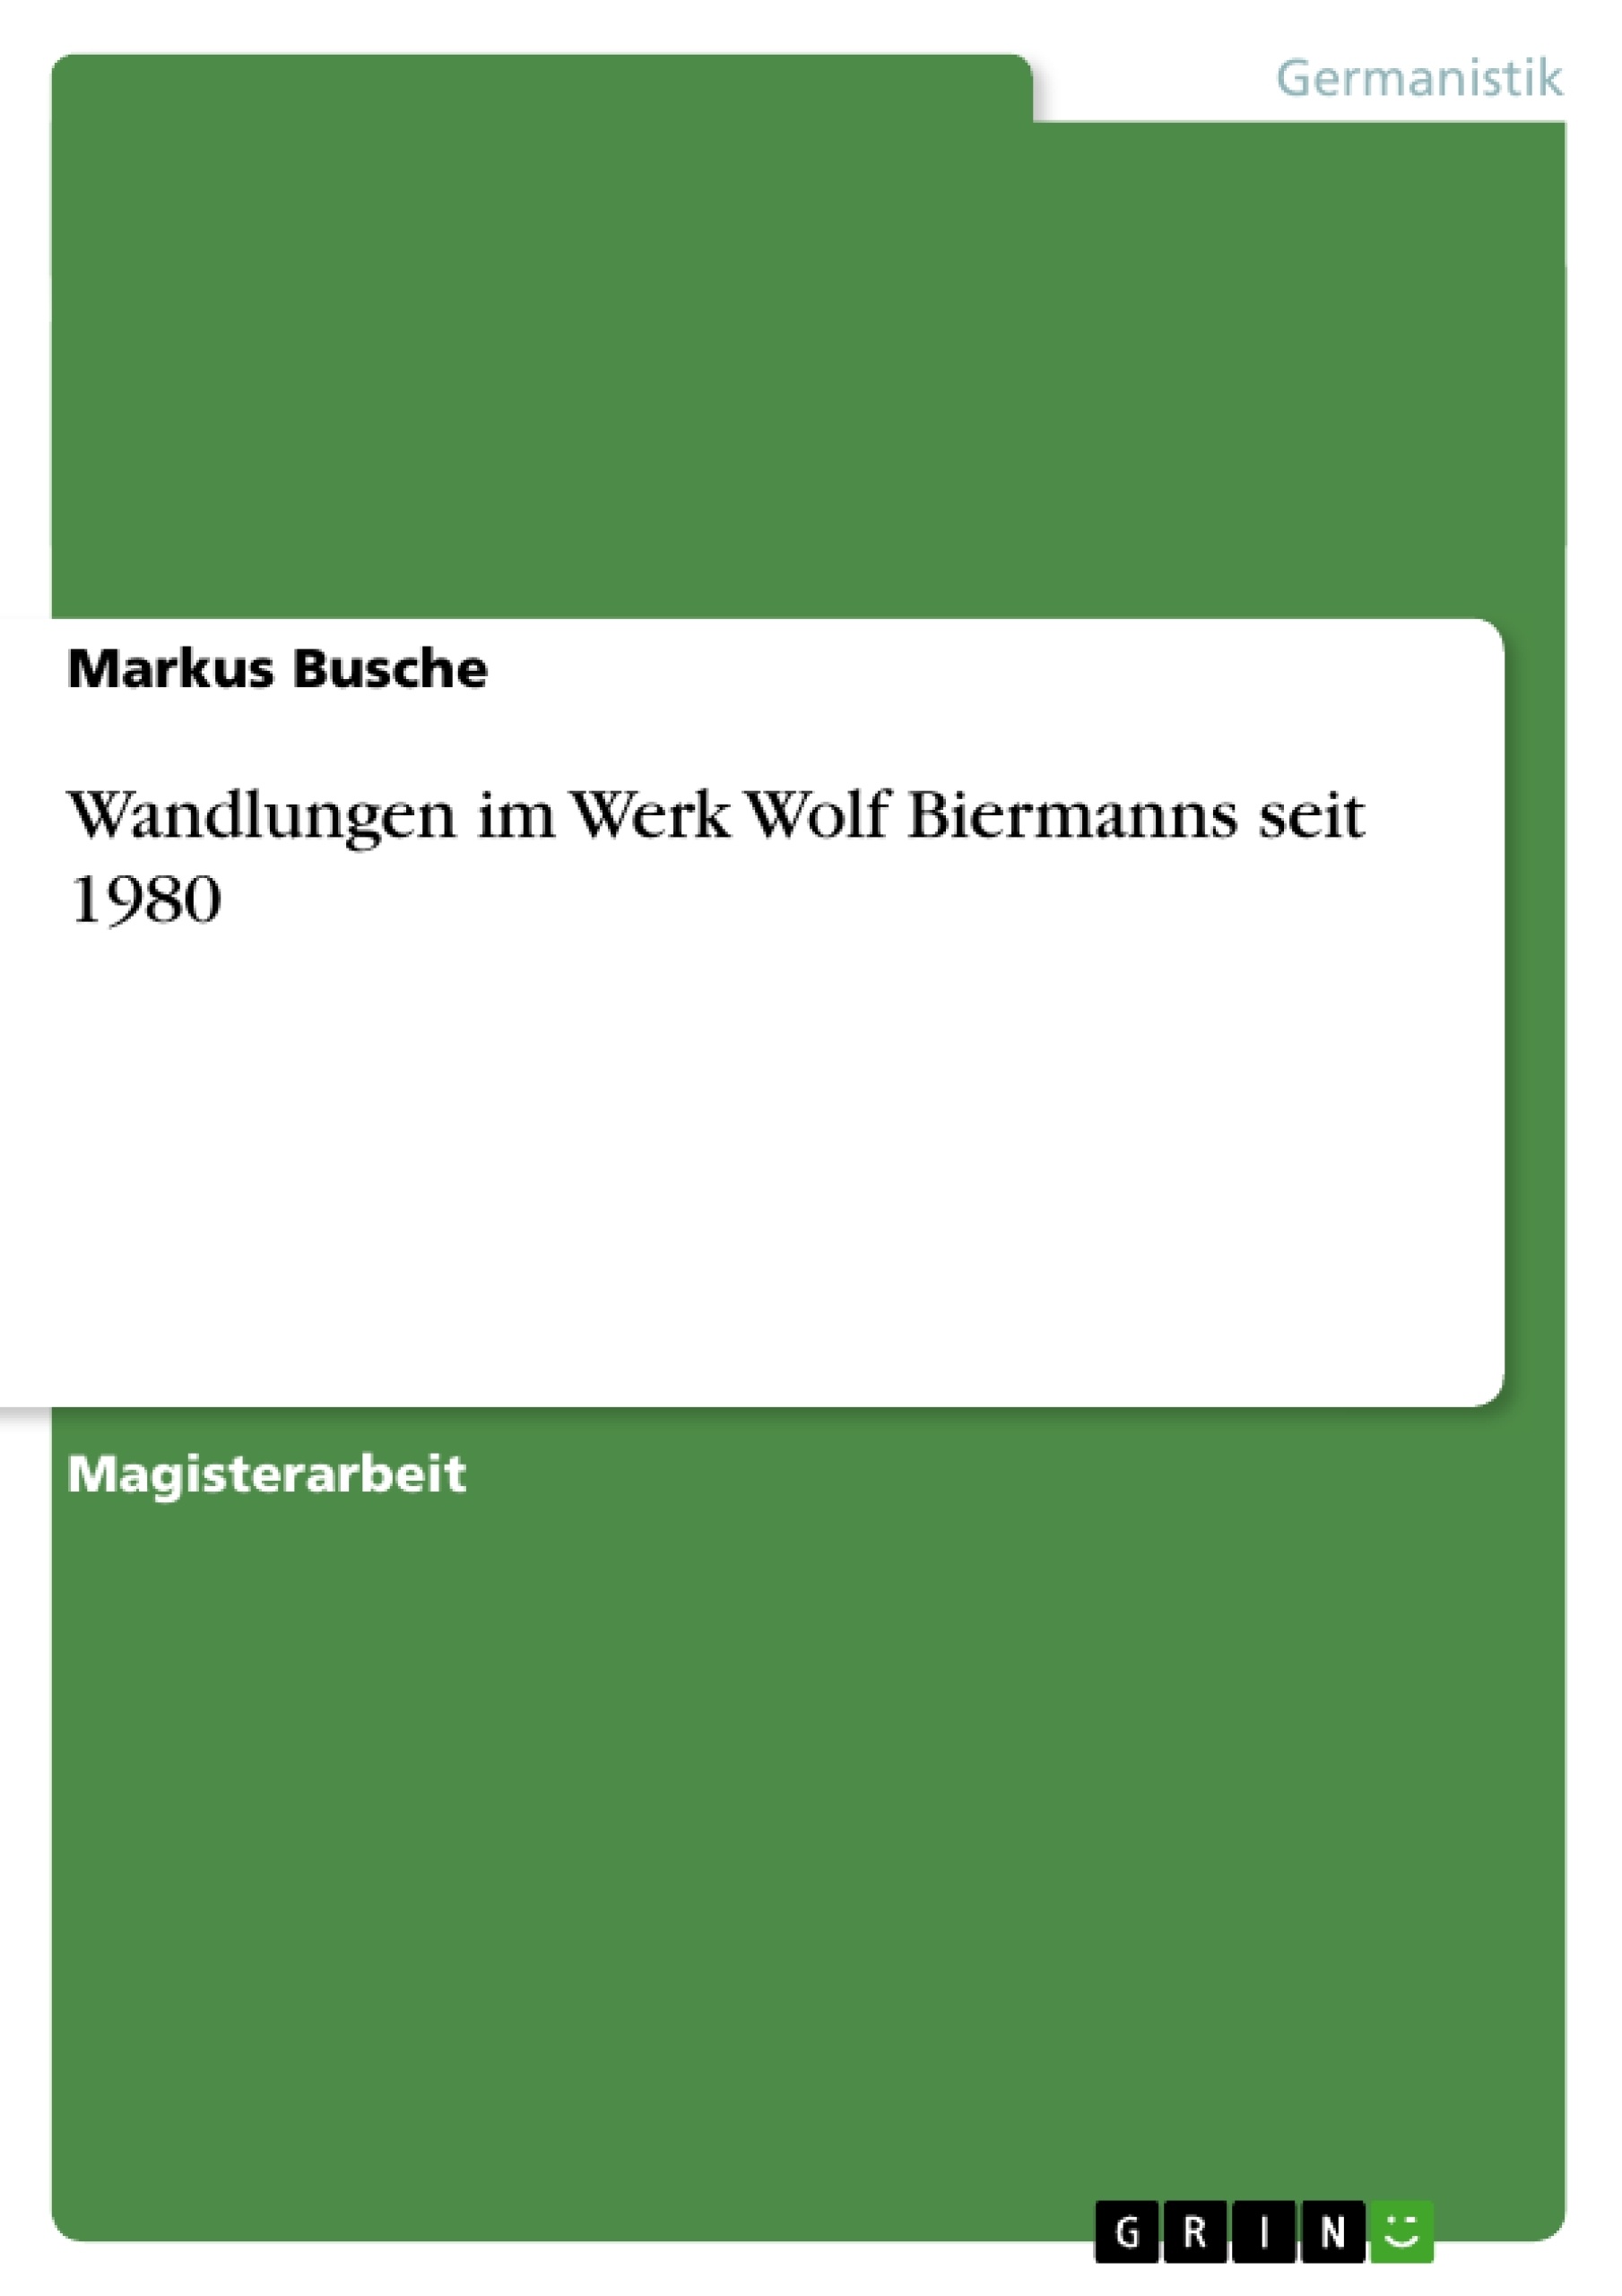 Título: Wandlungen im Werk Wolf Biermanns seit 1980